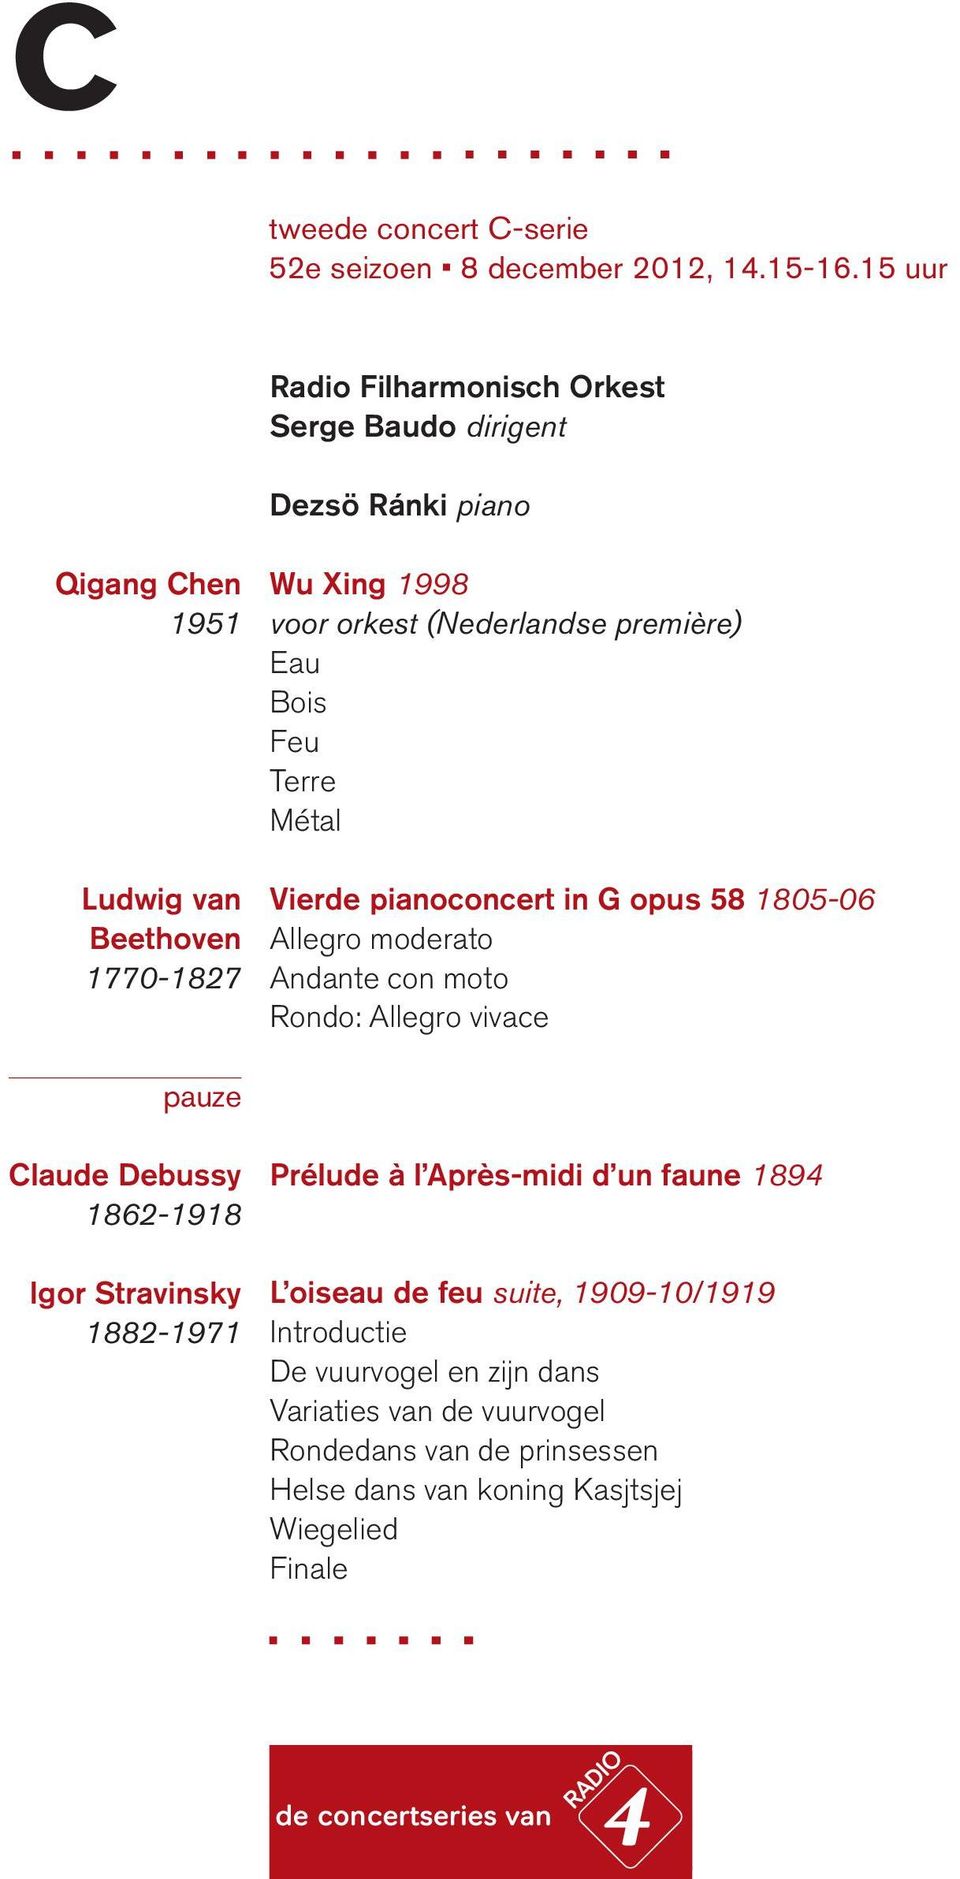 Bois Feu Terre Métal Vierde pianoconcert in G opus 58 1805-06 Allegro moderato Andante con moto Rondo: Allegro vivace pauze Claude Debussy 1862-1918